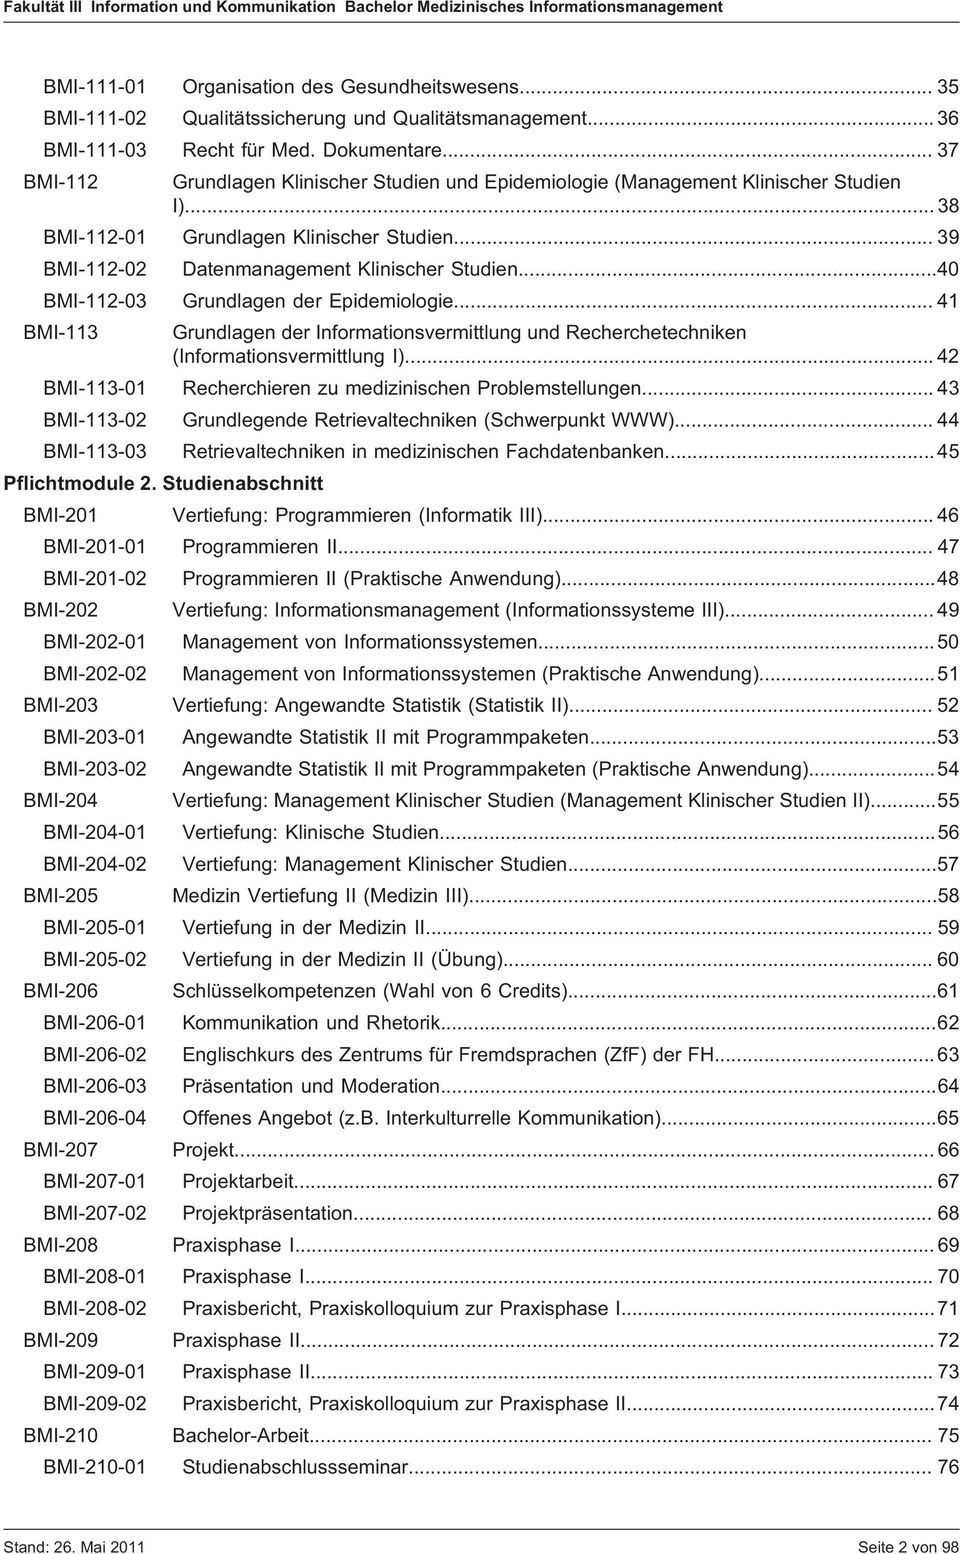 ..40 BMI-112-03 Grundlagen der Epidemiologie... 41 BMI-113 Grundlagen der Informationsvermittlung und Recherchetechniken (Informationsvermittlung I).